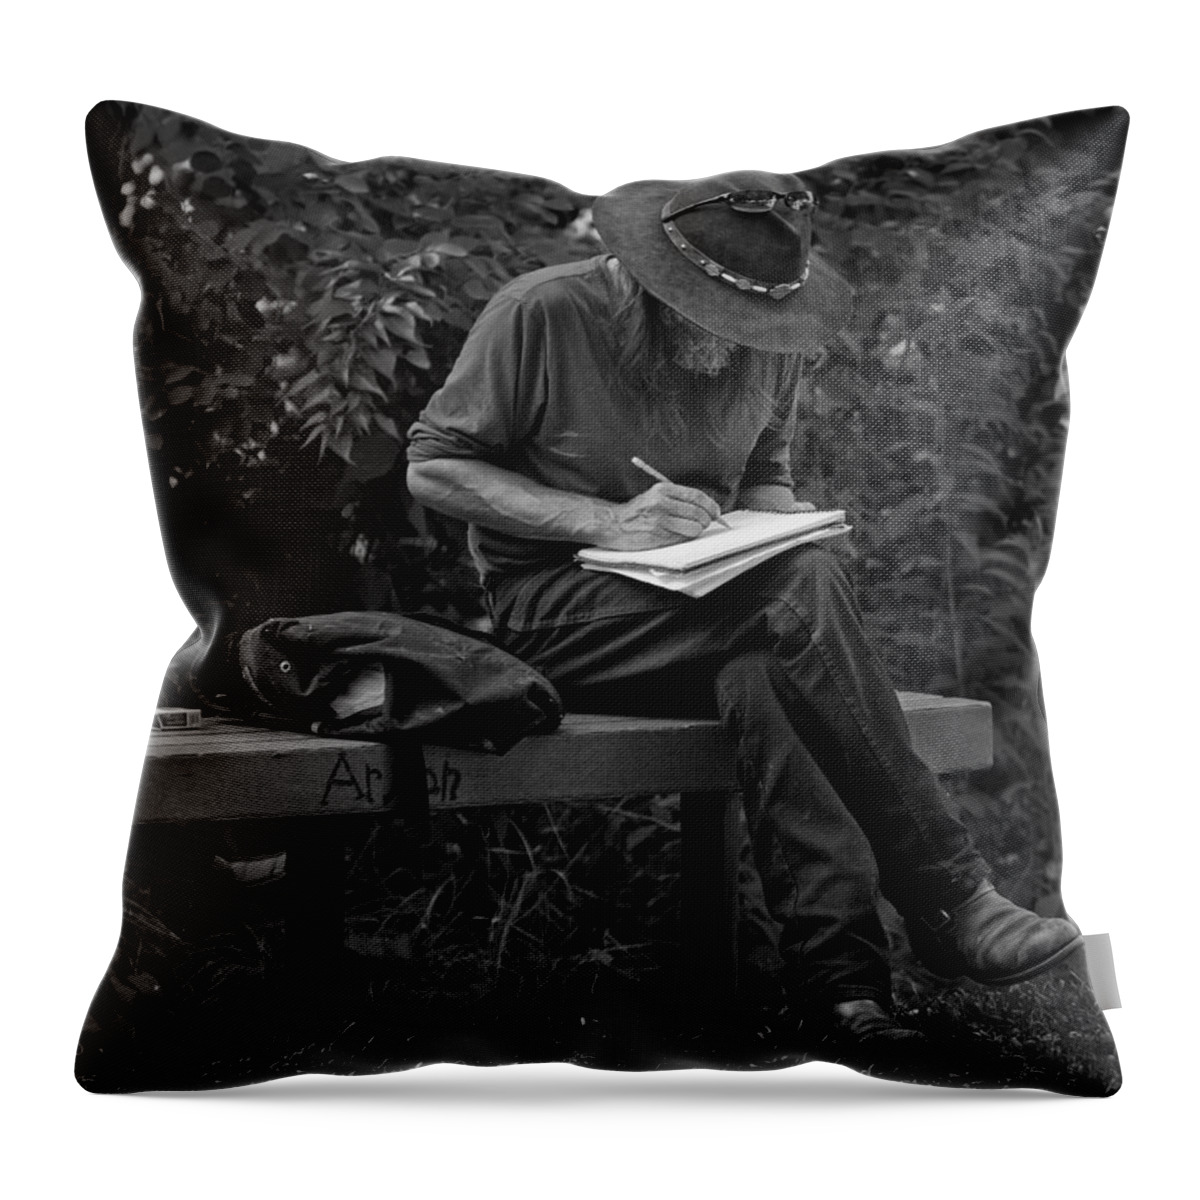 Bob Orsillo Throw Pillow featuring the photograph Poet by Bob Orsillo